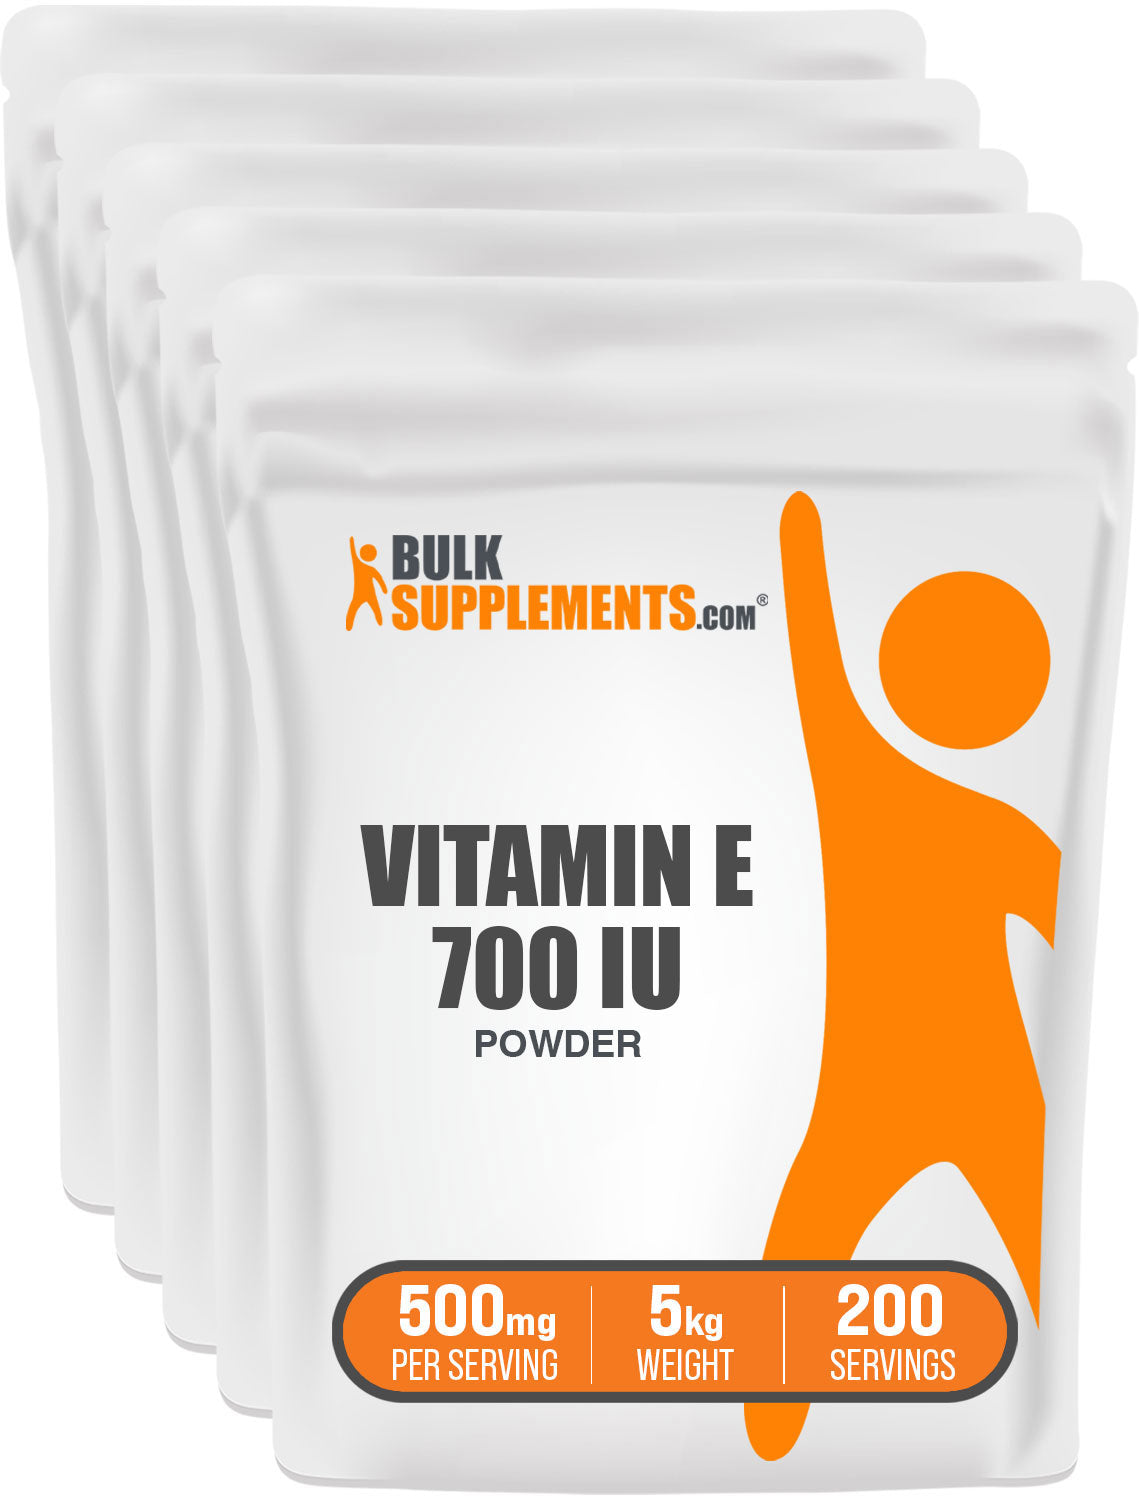 BulkSupplements.com Vitamin E 700 IU Powder 5kg bag